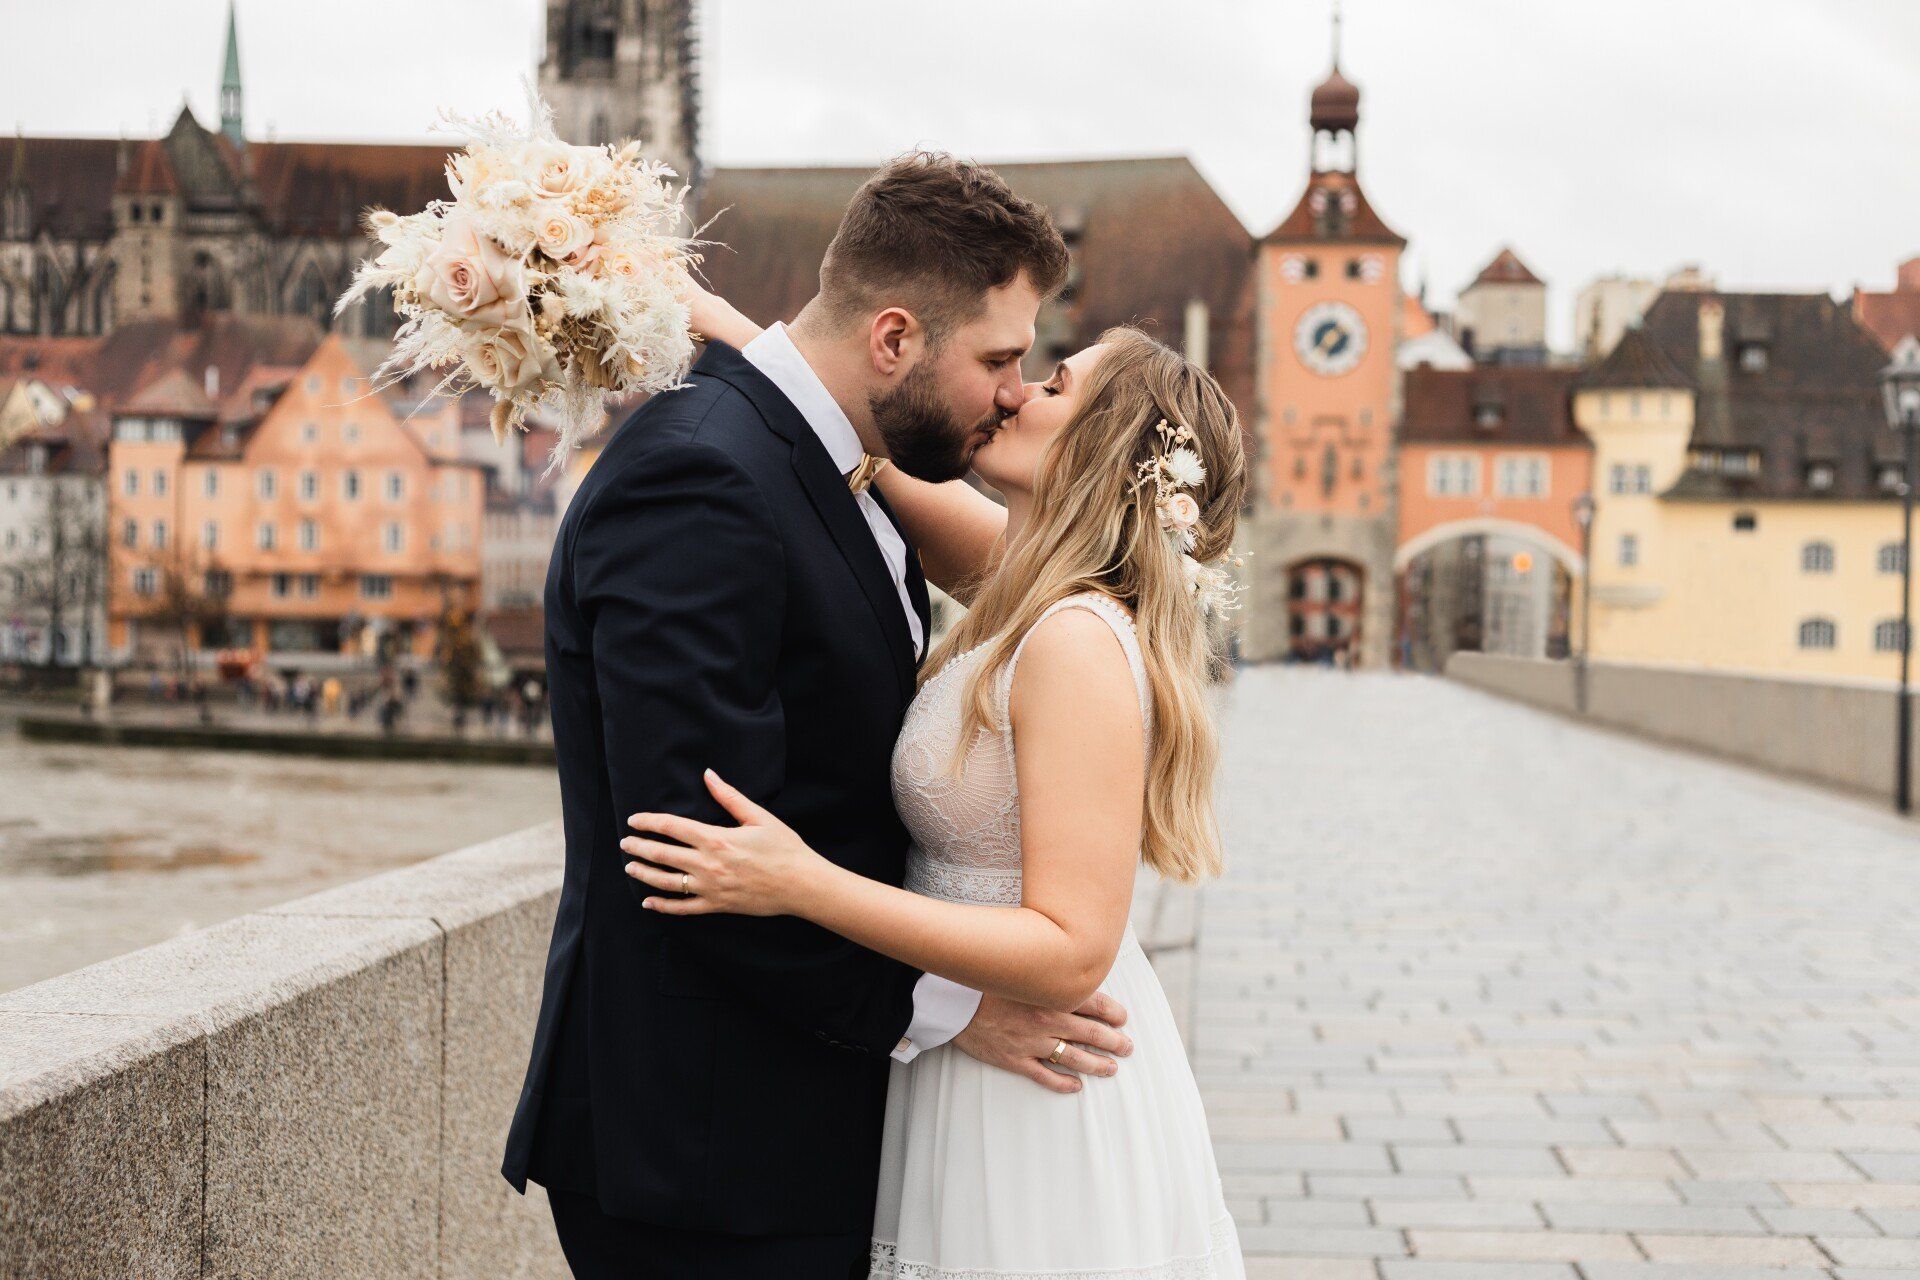 Auf diesem Foto küsst sich das Brautpaar auf der steinernen Brücke Regensburg